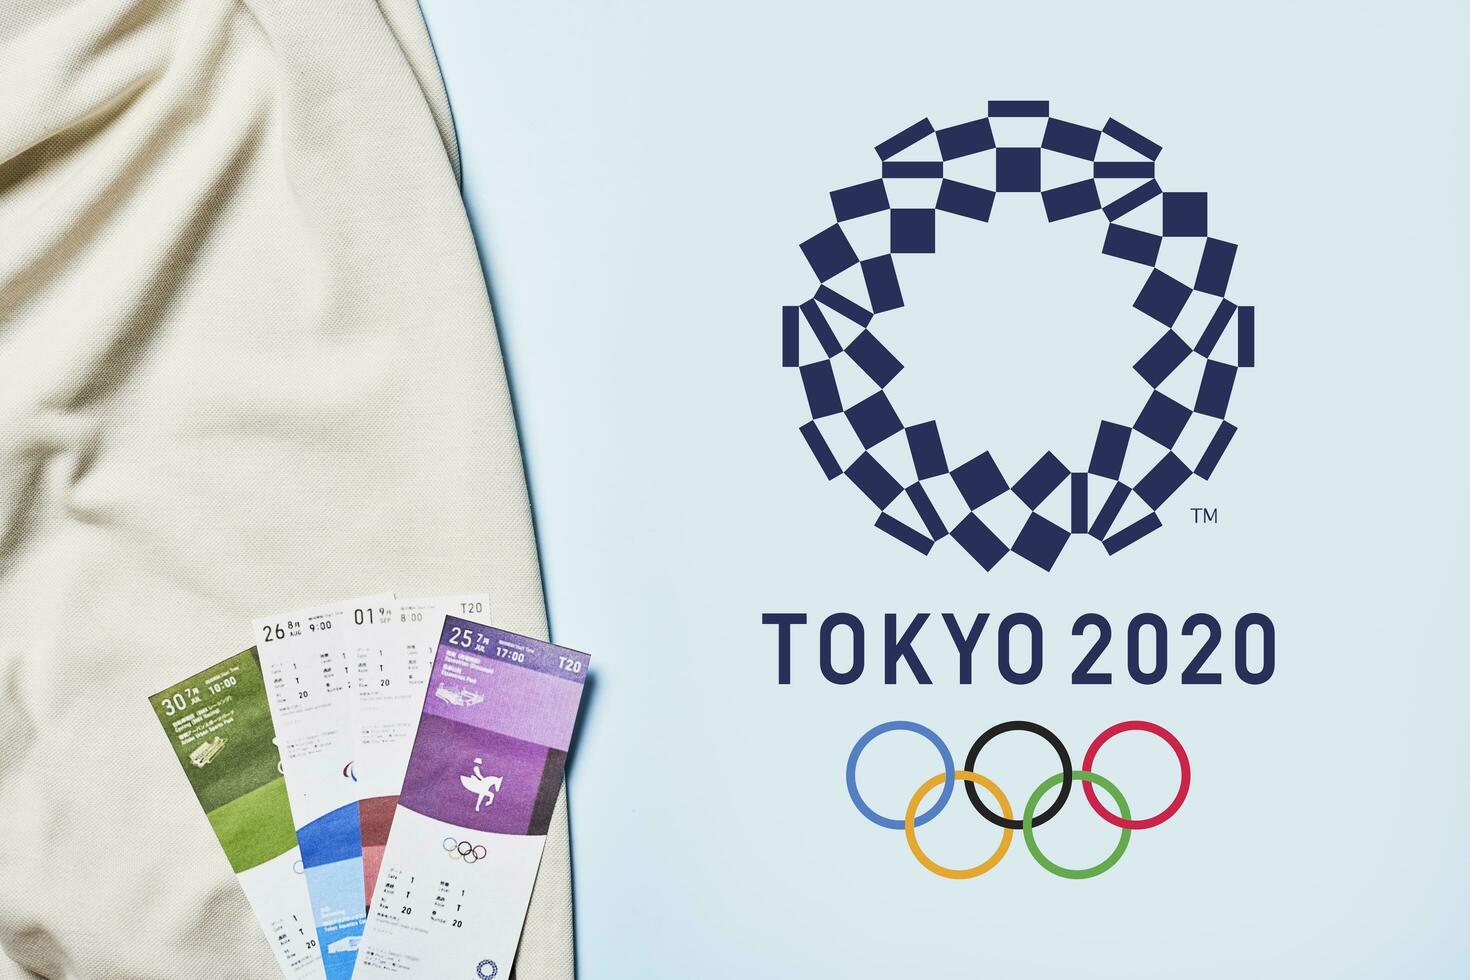 été olympique Jeux - tokyo 2020 photo